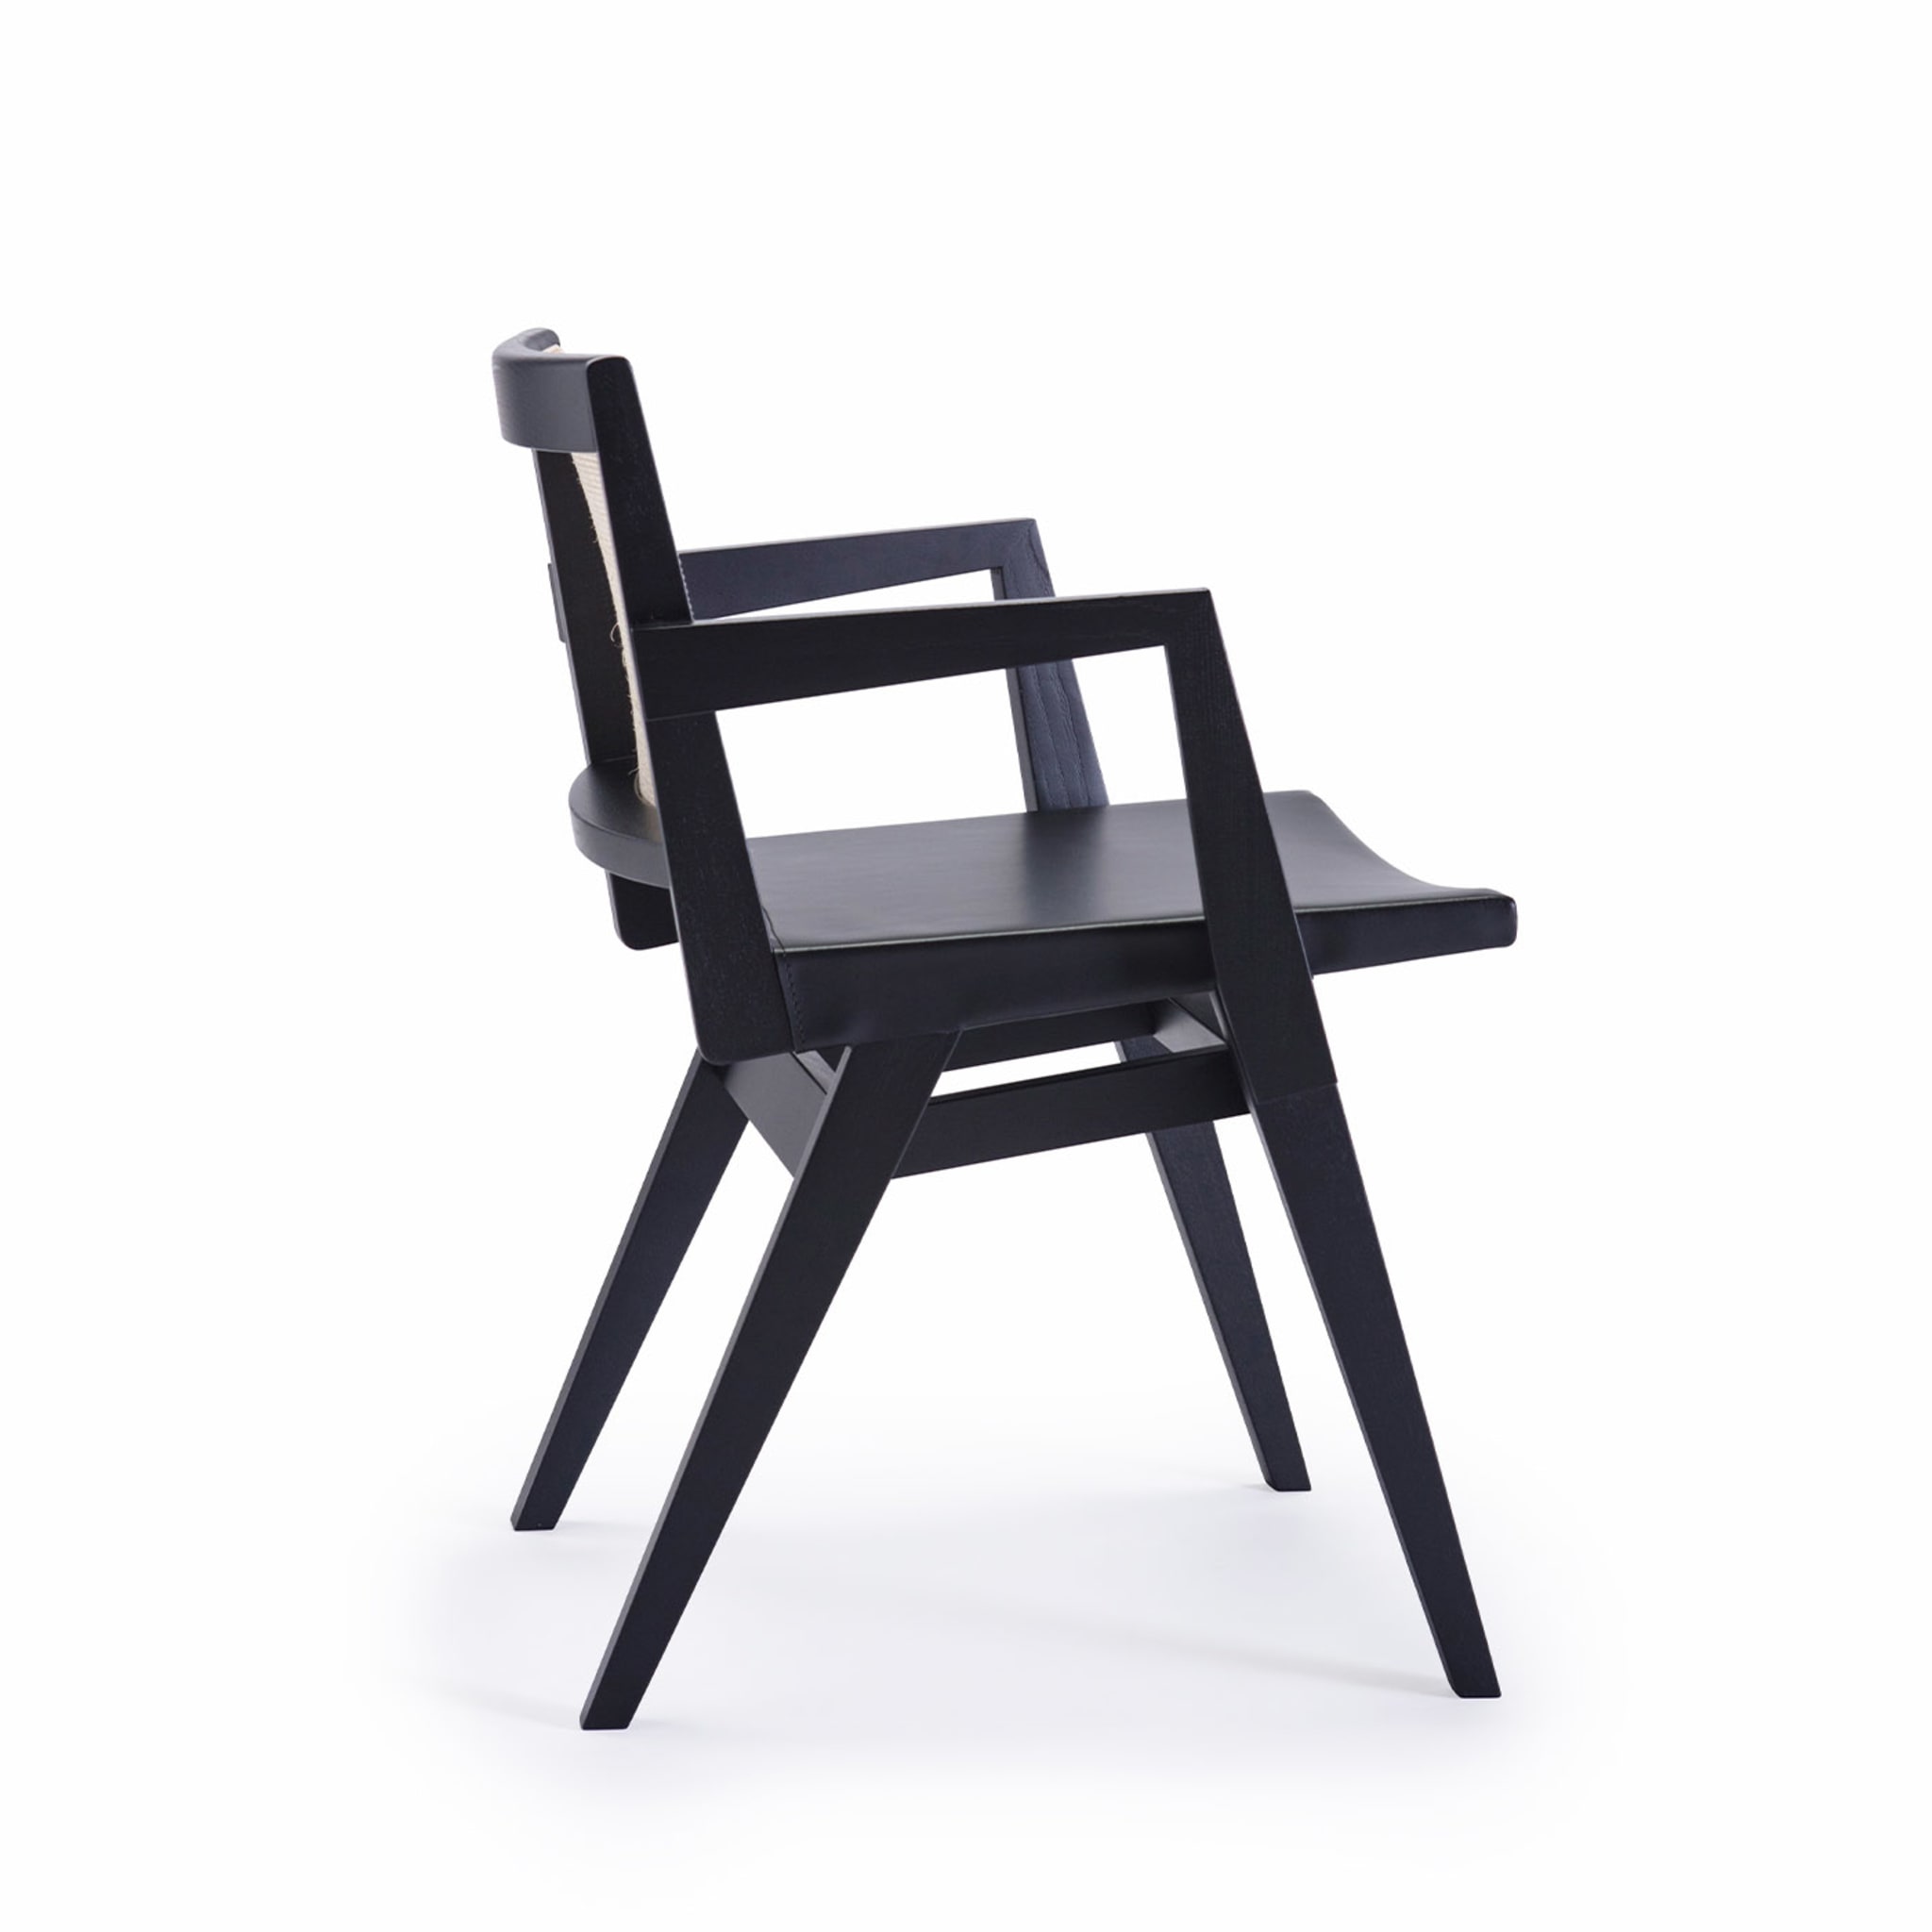 Dorothea/P Chaise noire - Vue alternative 2